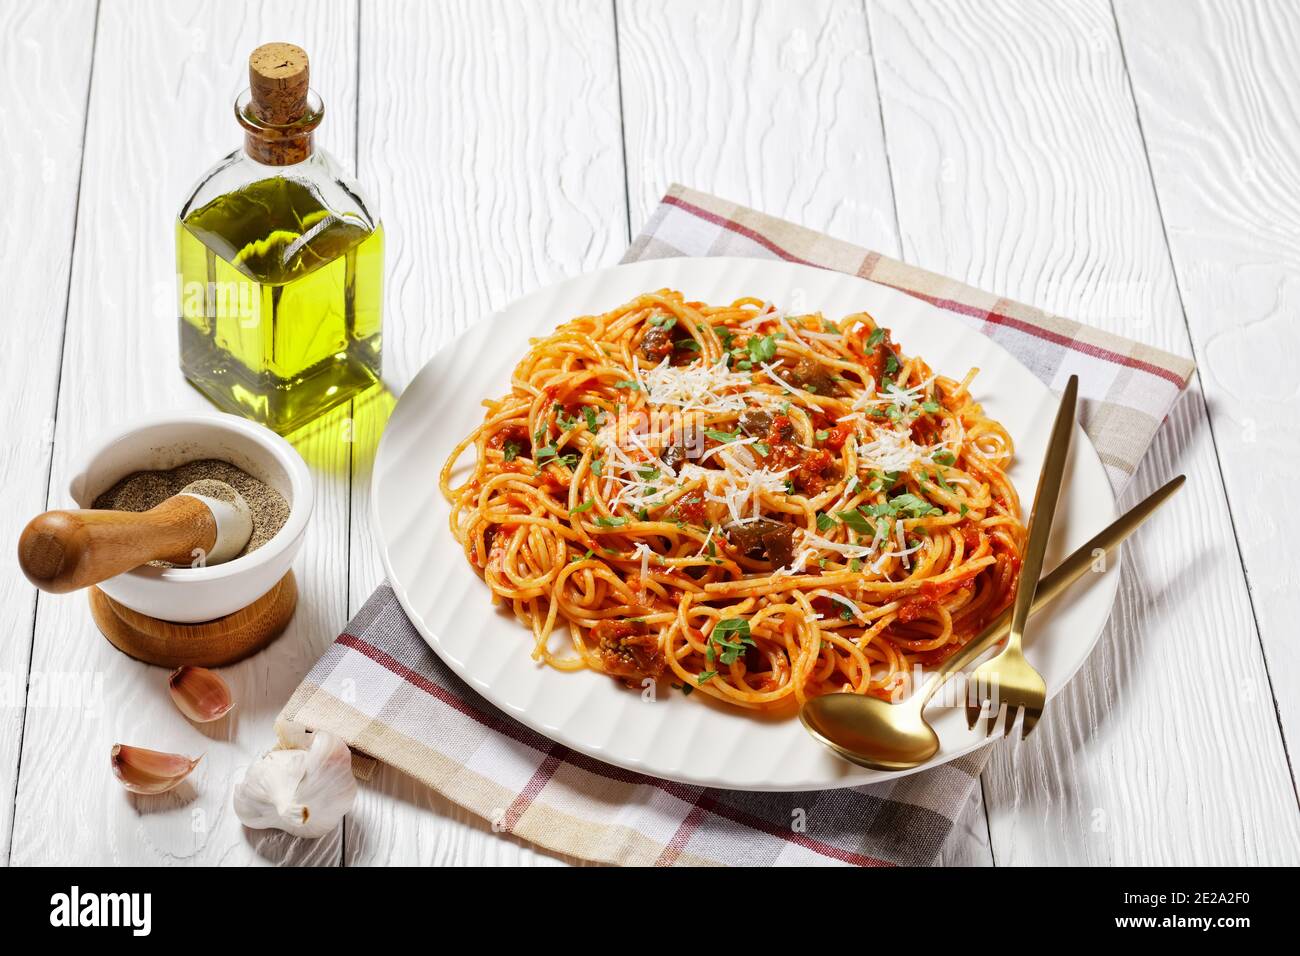 Traditionelle sizilianische Pasta Gericht aus sautierten Auberginen mit Tomatensauce geworfen und gekrönt mit zerfetzten Parmesan serviert auf einem weißen Teller, italienische Küche Stockfoto